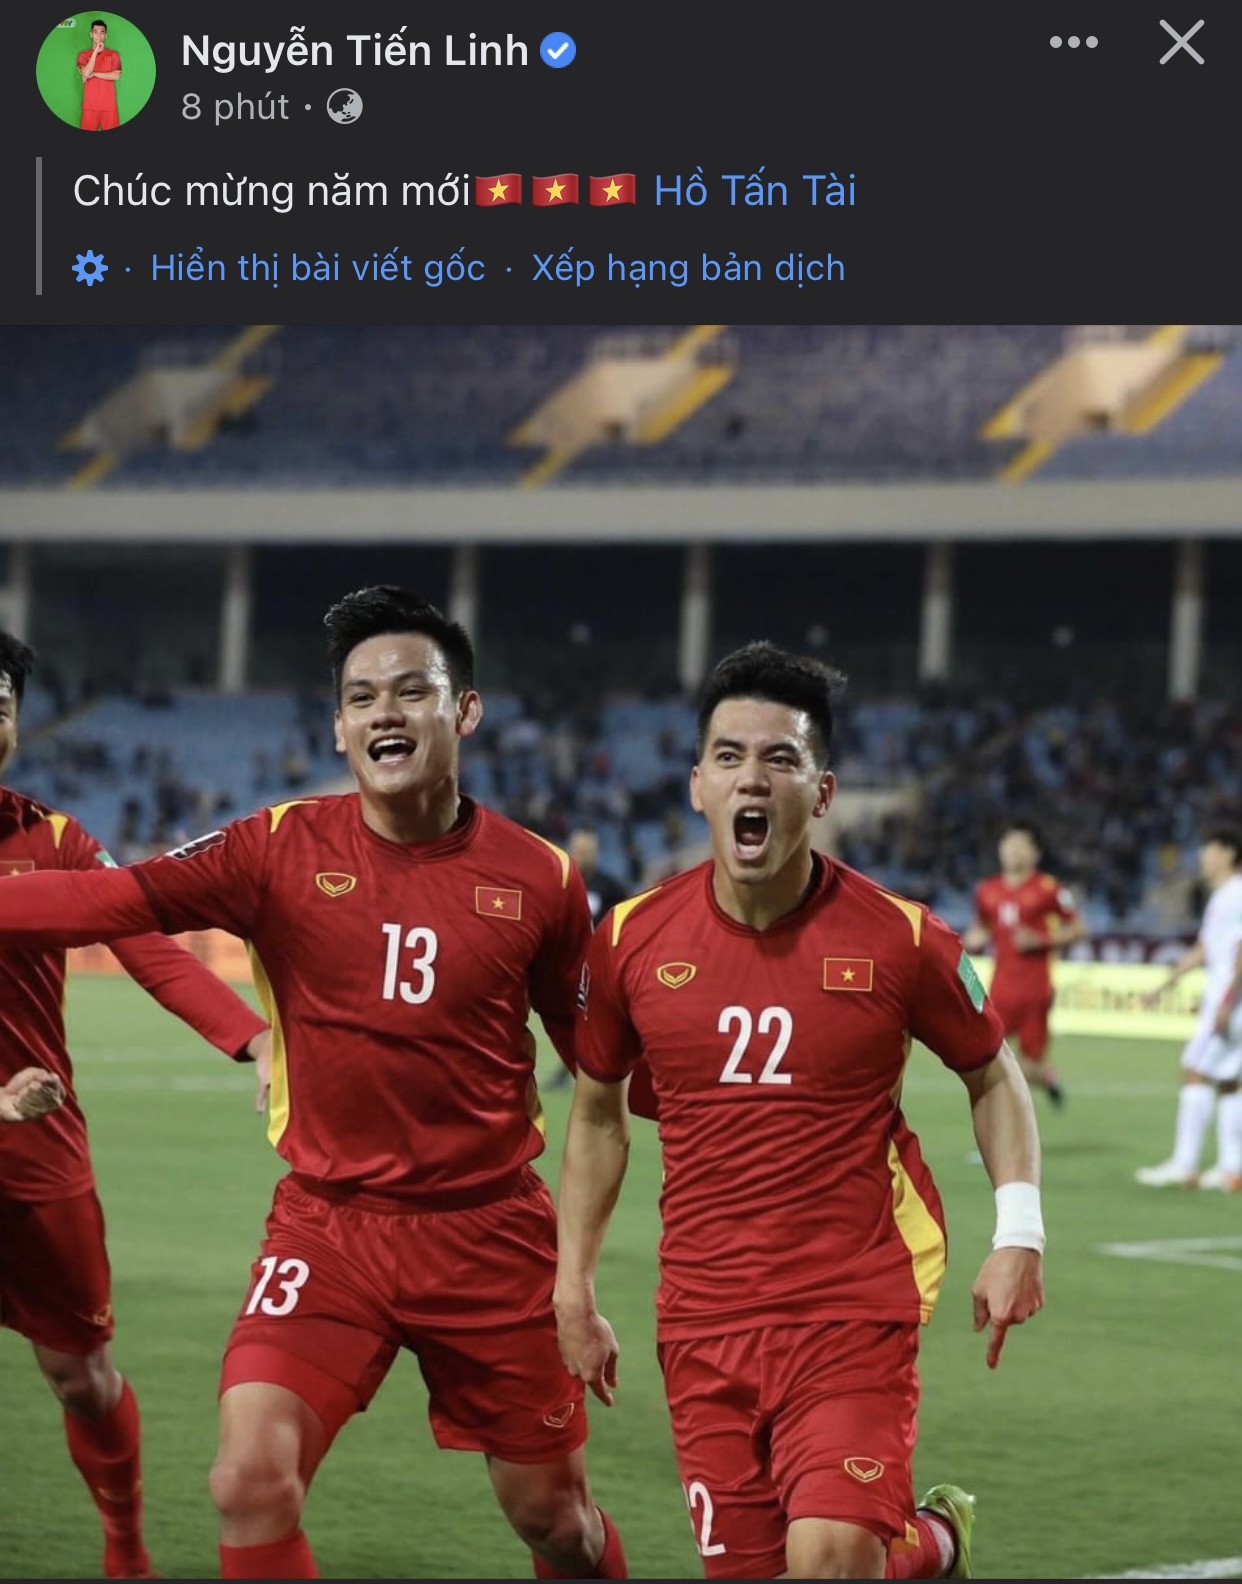 Các cầu thủ ĐT Việt Nam ăn mừng sau khi dành chiến thắng trước Trung Quốc - Ảnh 2.